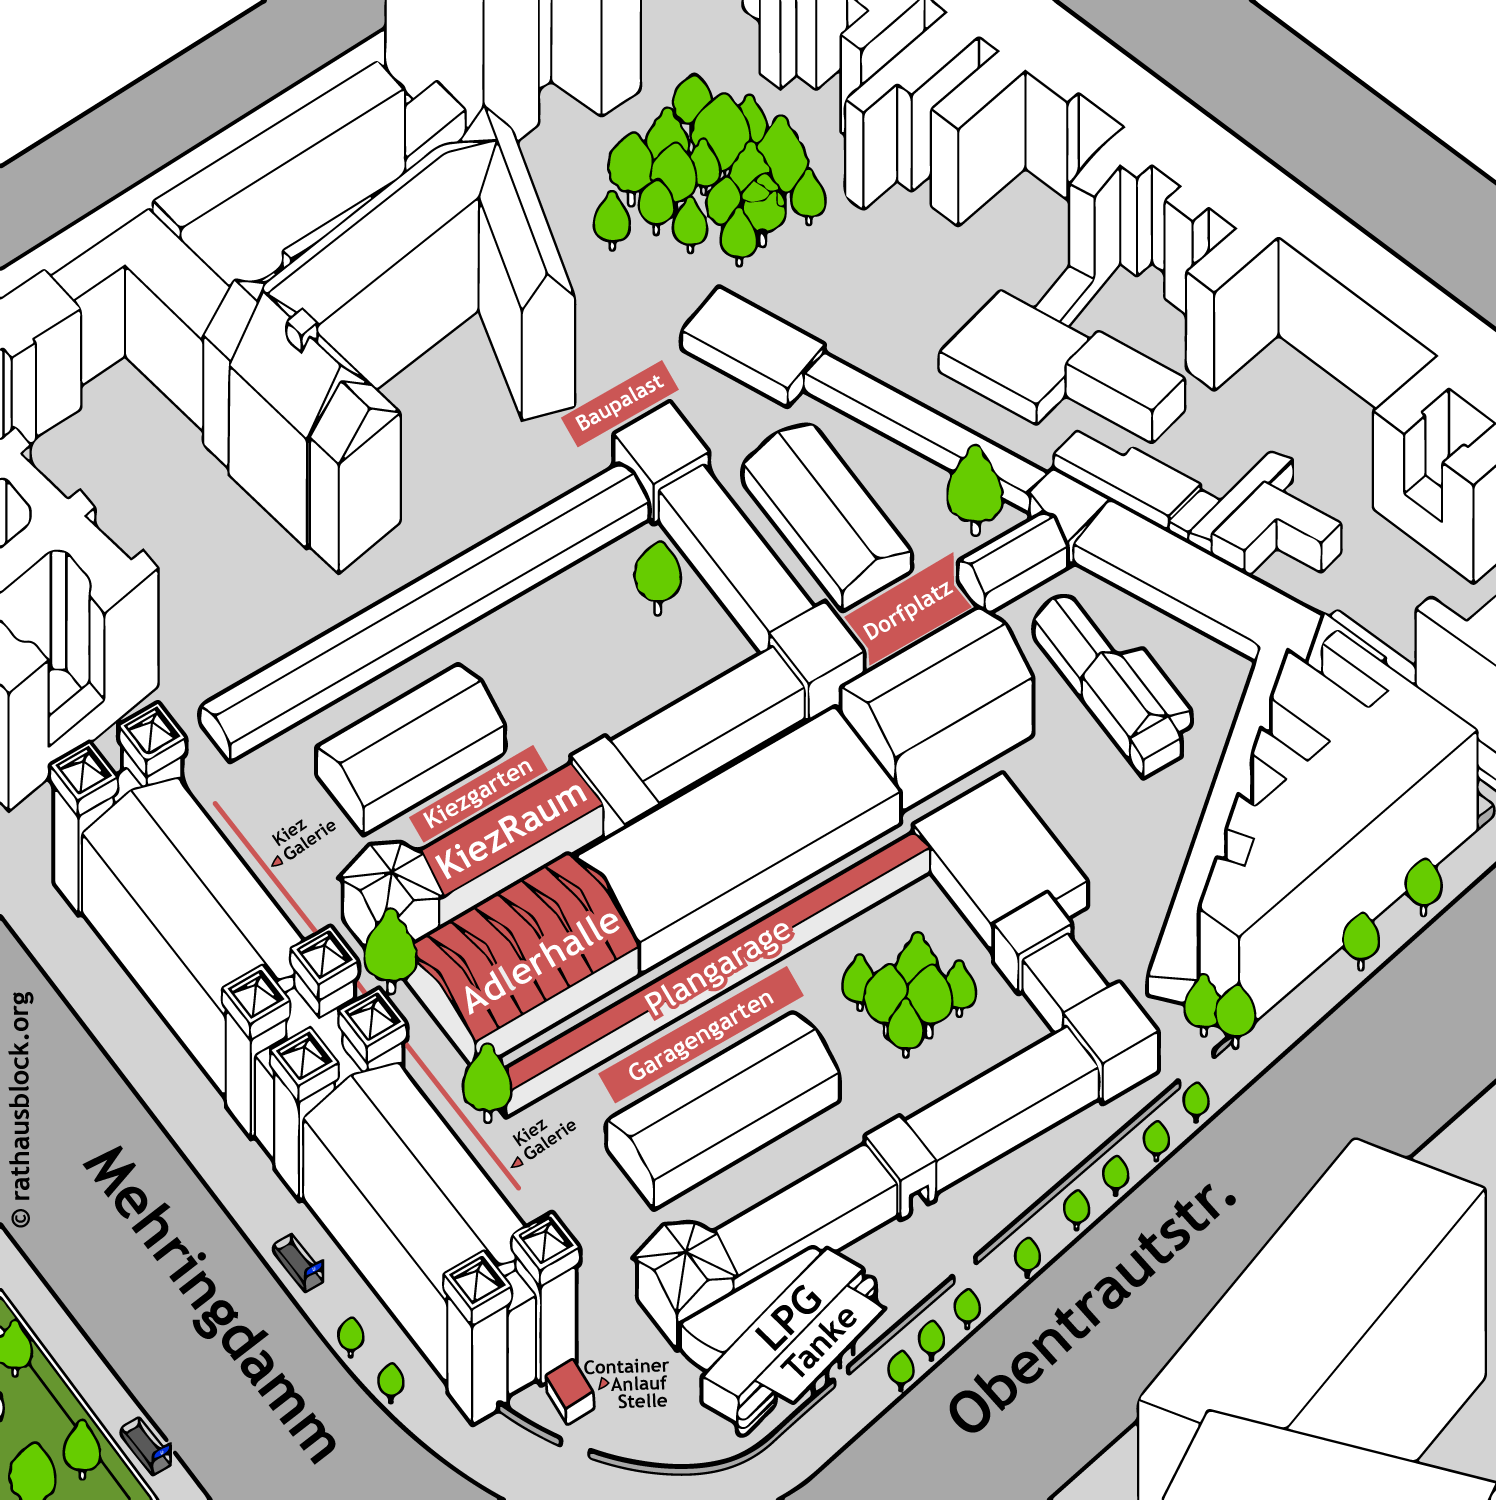  (Dragoner Areal in Kreuzberg: kooperative Stadtentwicklung & selbstorganisierte Beteiligung)